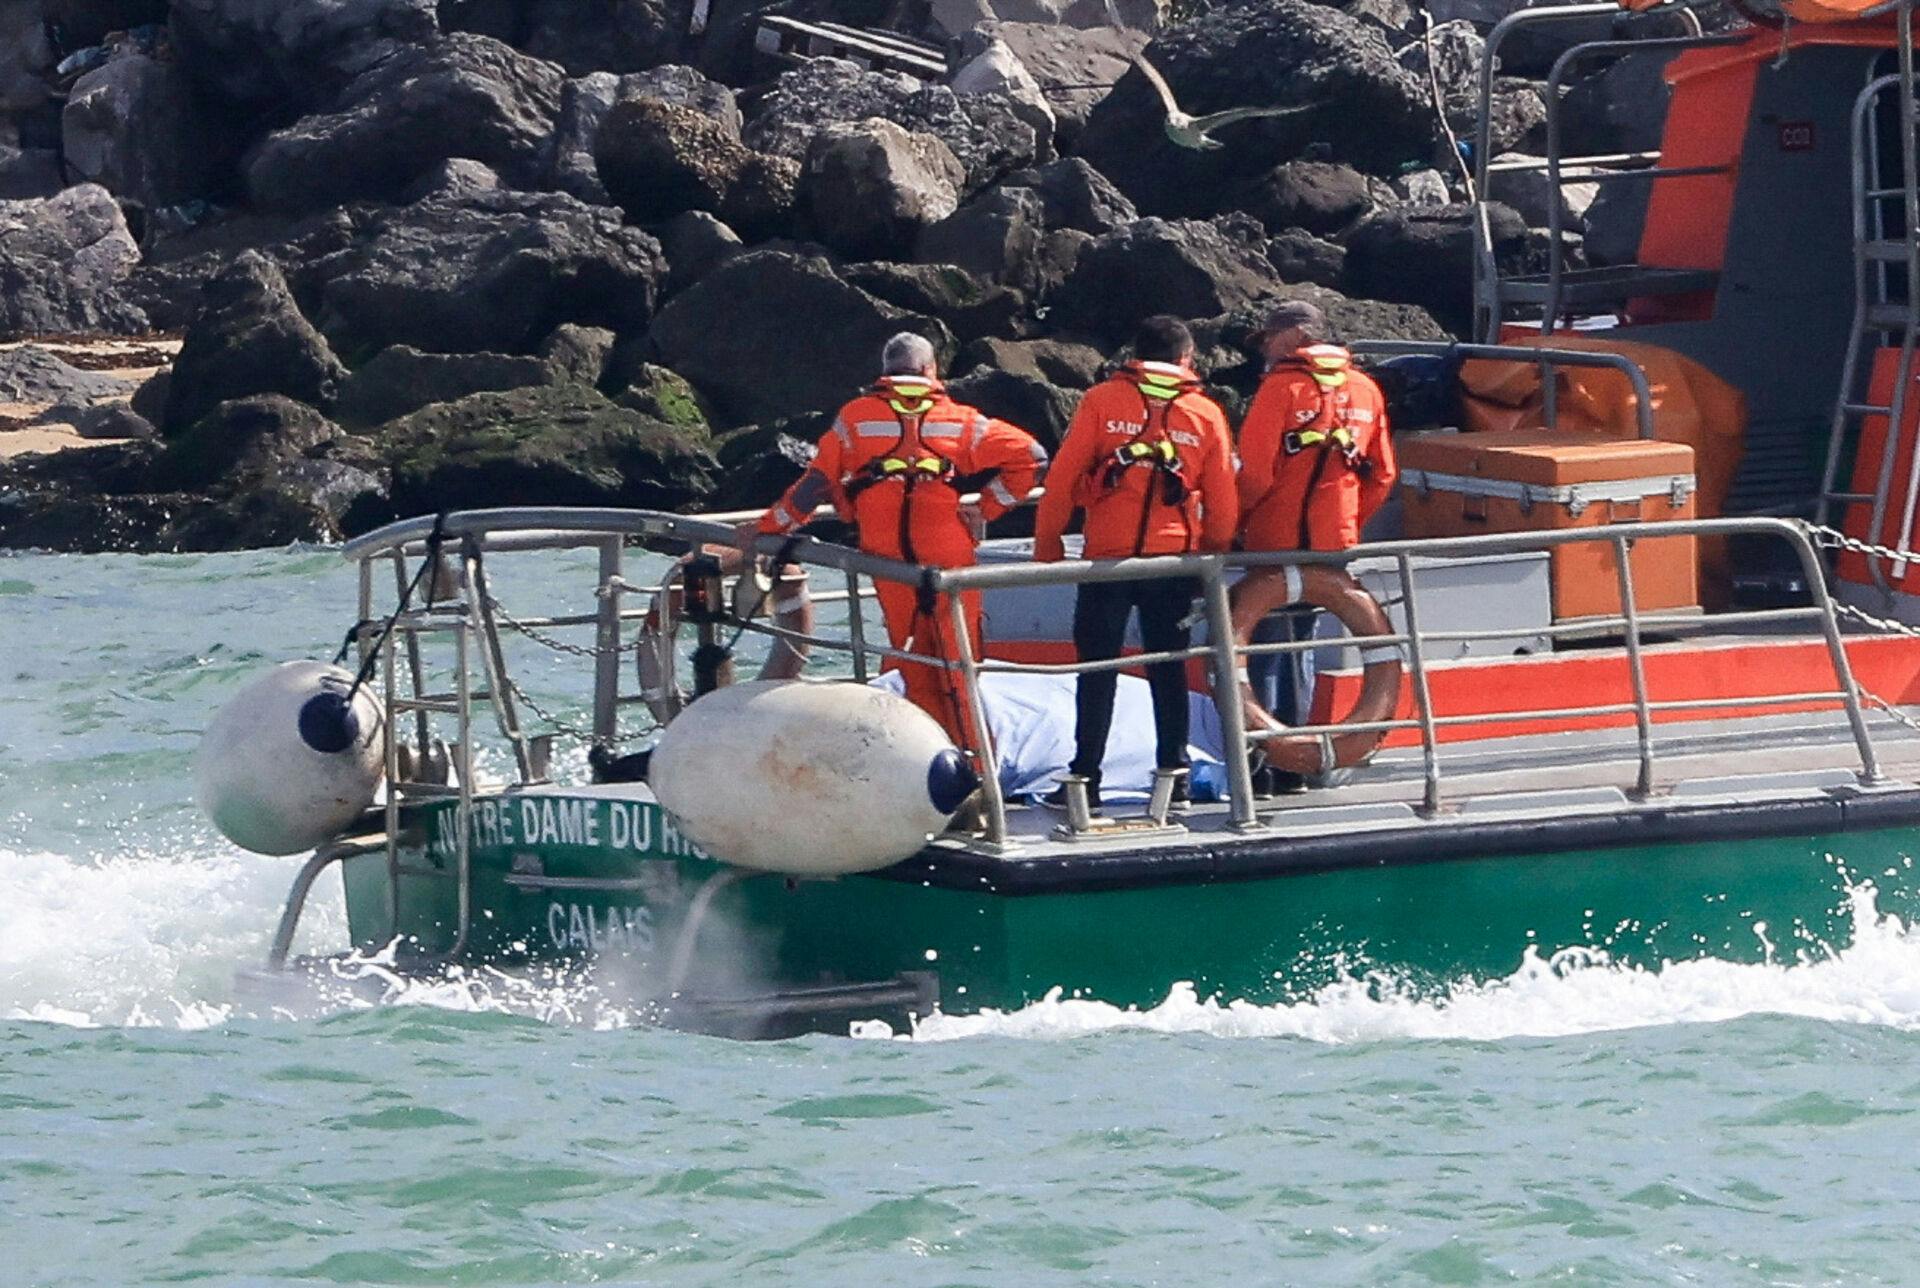 Seks personer er døde, efter massevis af migrantbåde forsøgte at krydse Den Engelske Kanal lørdag morgen.